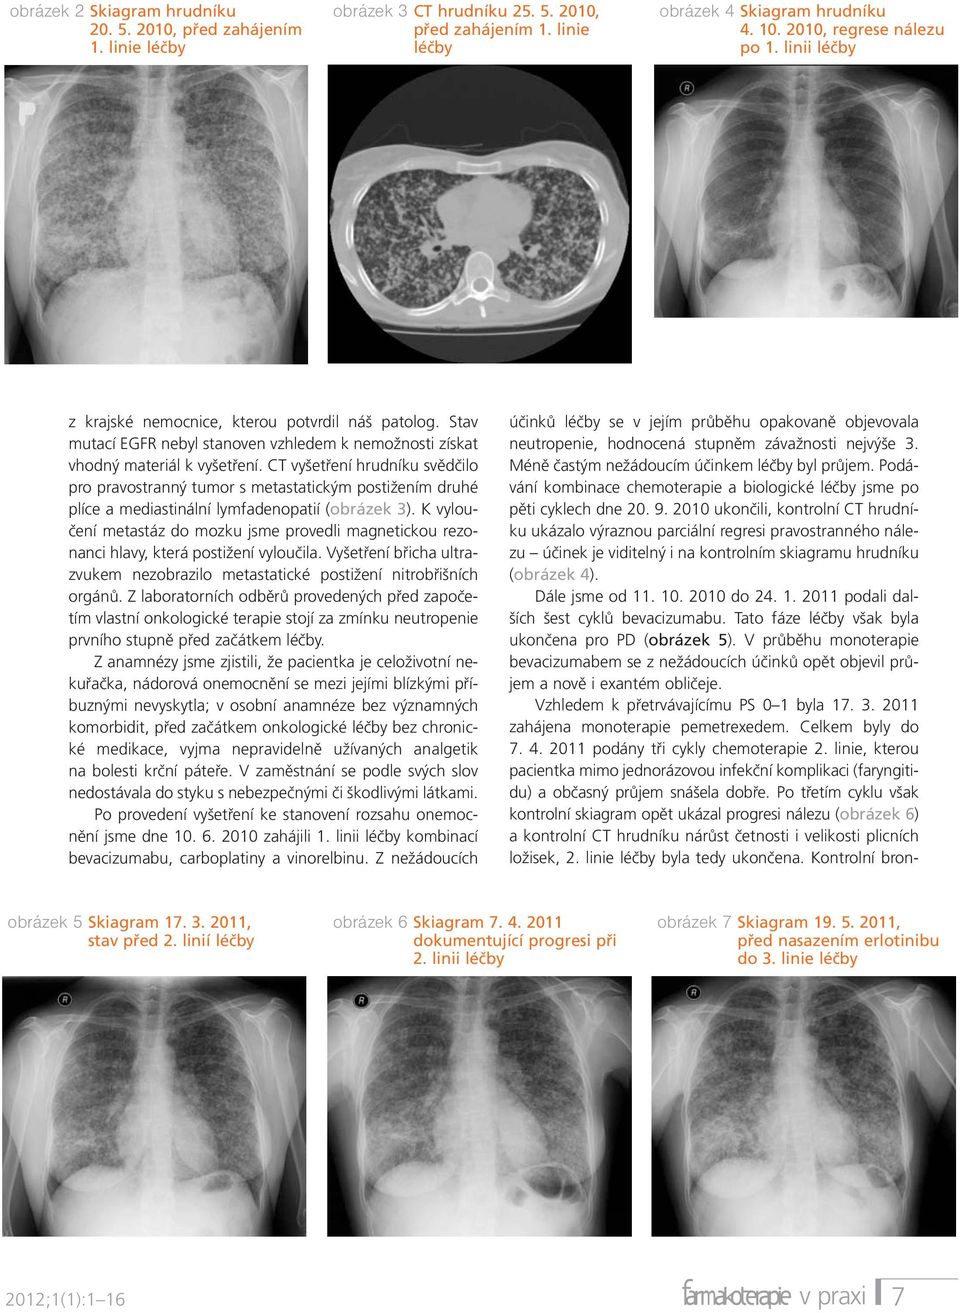 CT vyšetření hrudníku svědčilo pro pravostranný tumor s metastatickým postižením druhé plíce a mediastinální lymfadenopatií (obrázek 3).